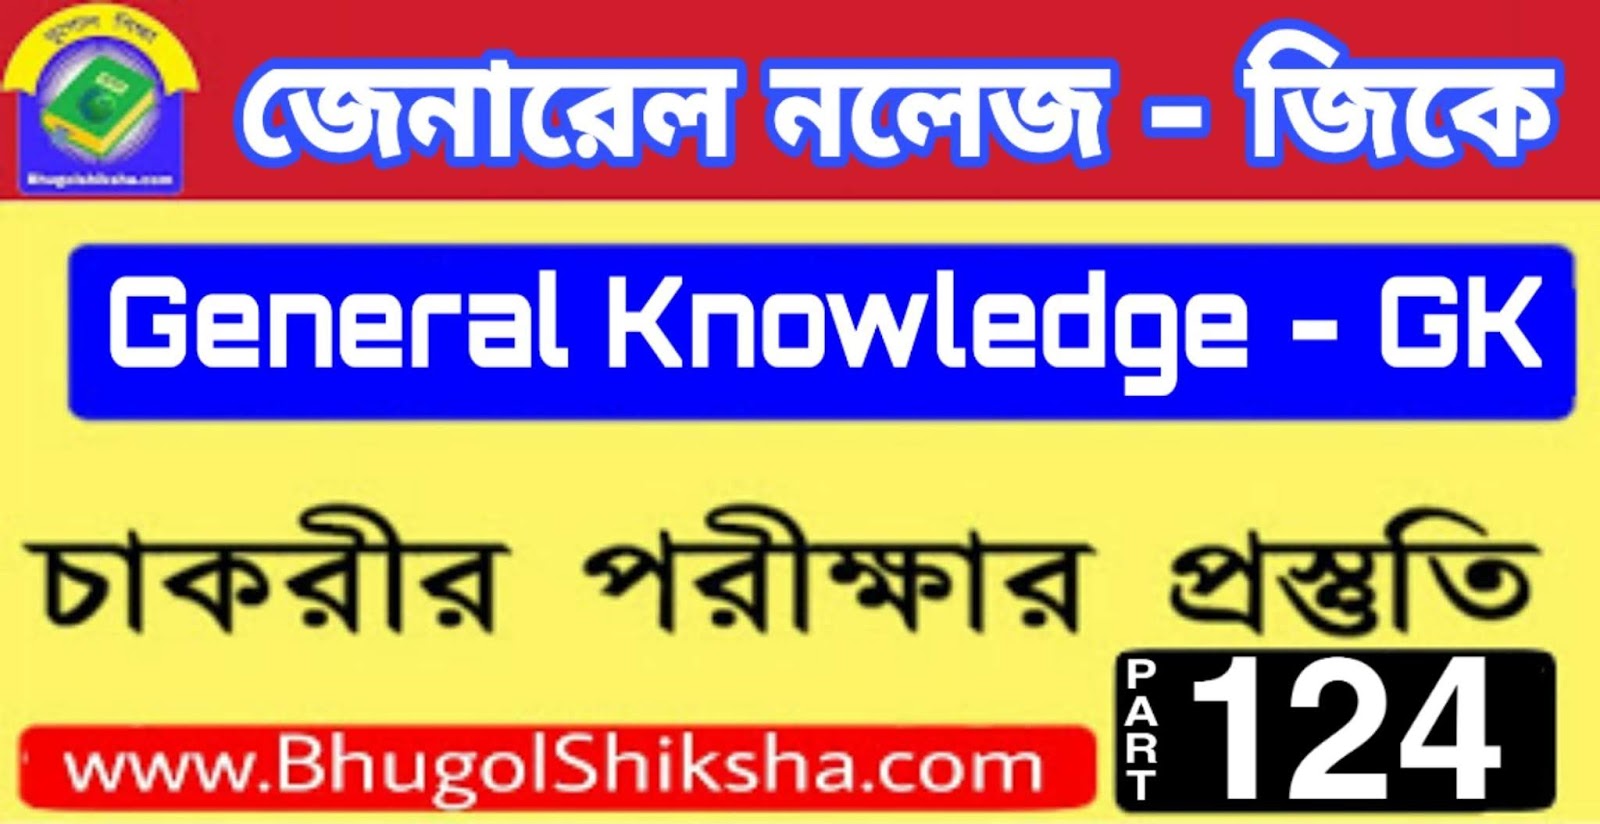 ভারতের ভূগোল - Indian Geography | জেনারেল নলেজ জিকে প্রশ্ন ও উত্তর | General Knowledge GK MCQ in Bengali | Part - 124